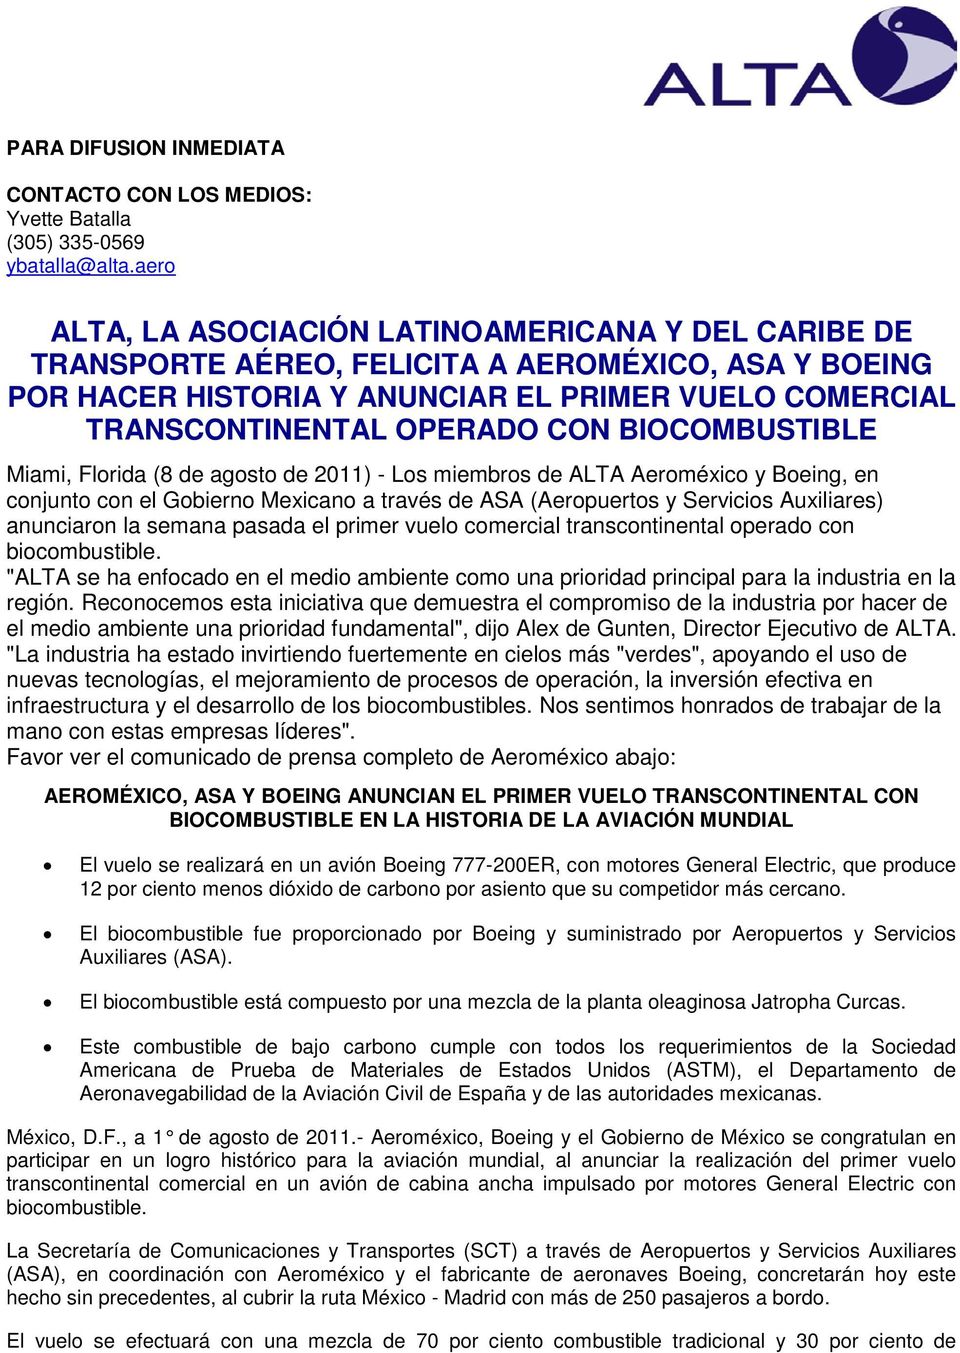 BIOCOMBUSTIBLE Miami, Florida (8 de agosto de 2011) - Los miembros de ALTA Aeroméxico y Boeing, en conjunto con el Gobierno Mexicano a través de ASA (Aeropuertos y Servicios Auxiliares) anunciaron la